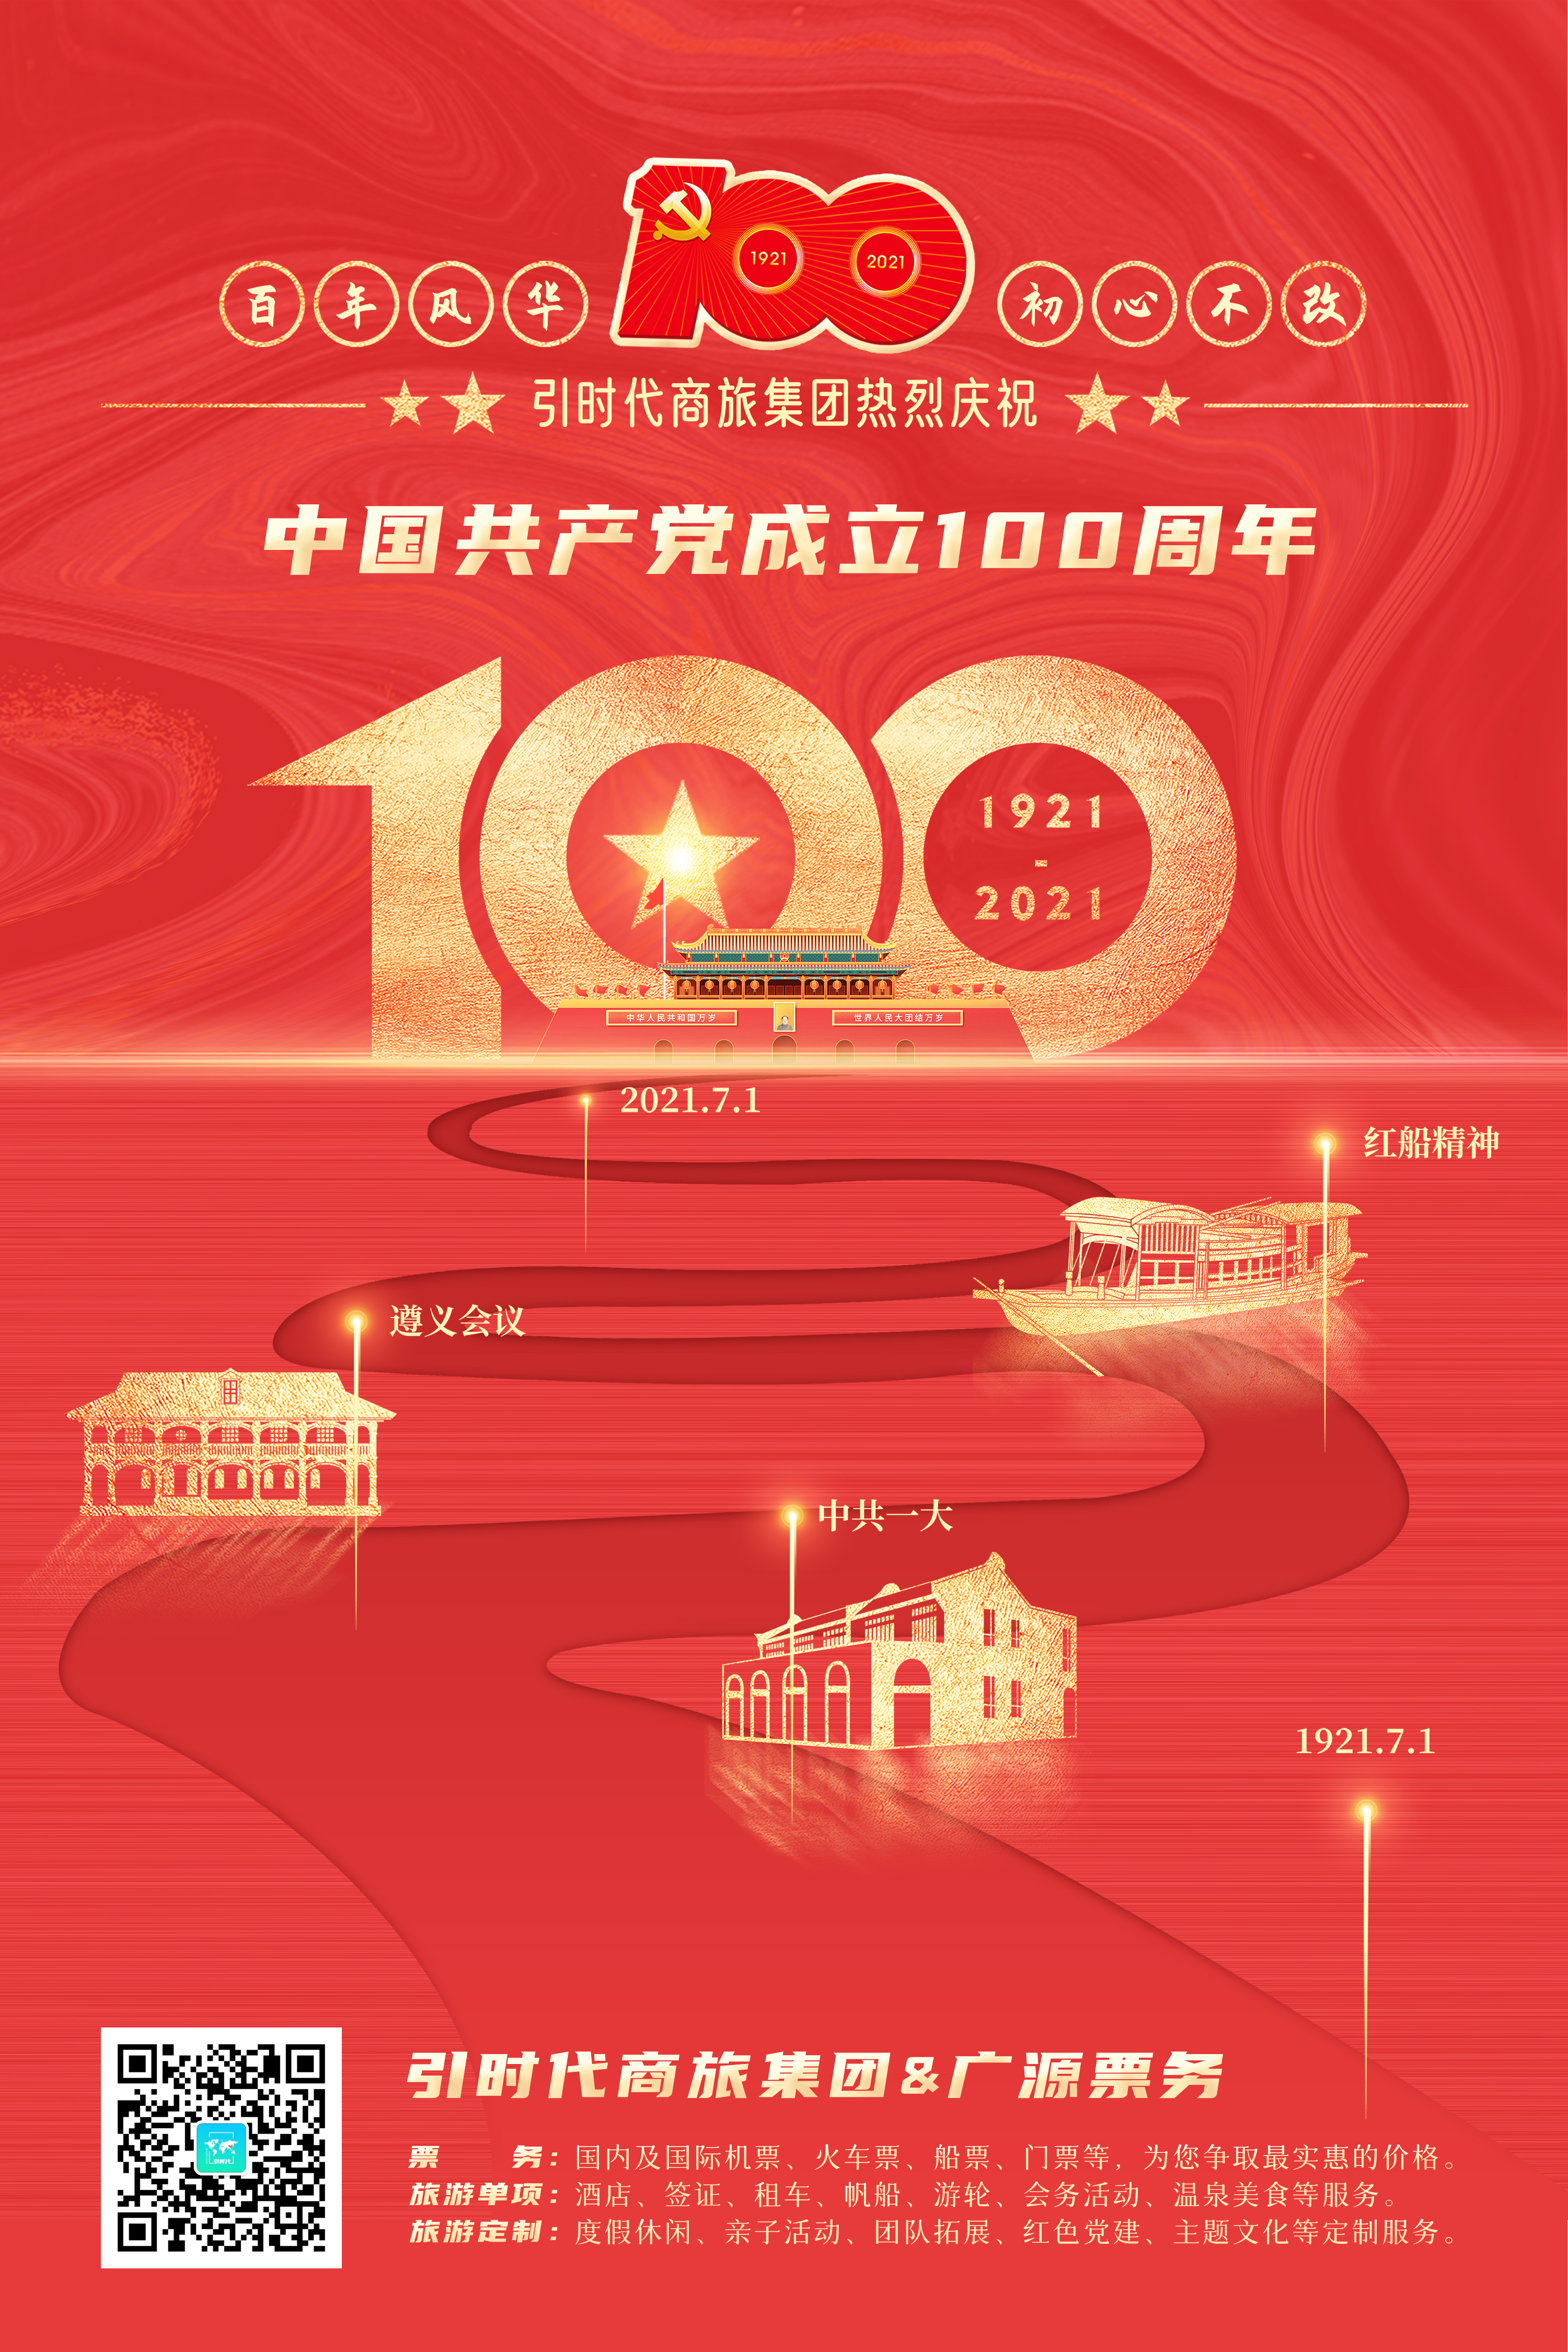 引时代商旅集团热烈庆祝中国共产党成立100周年